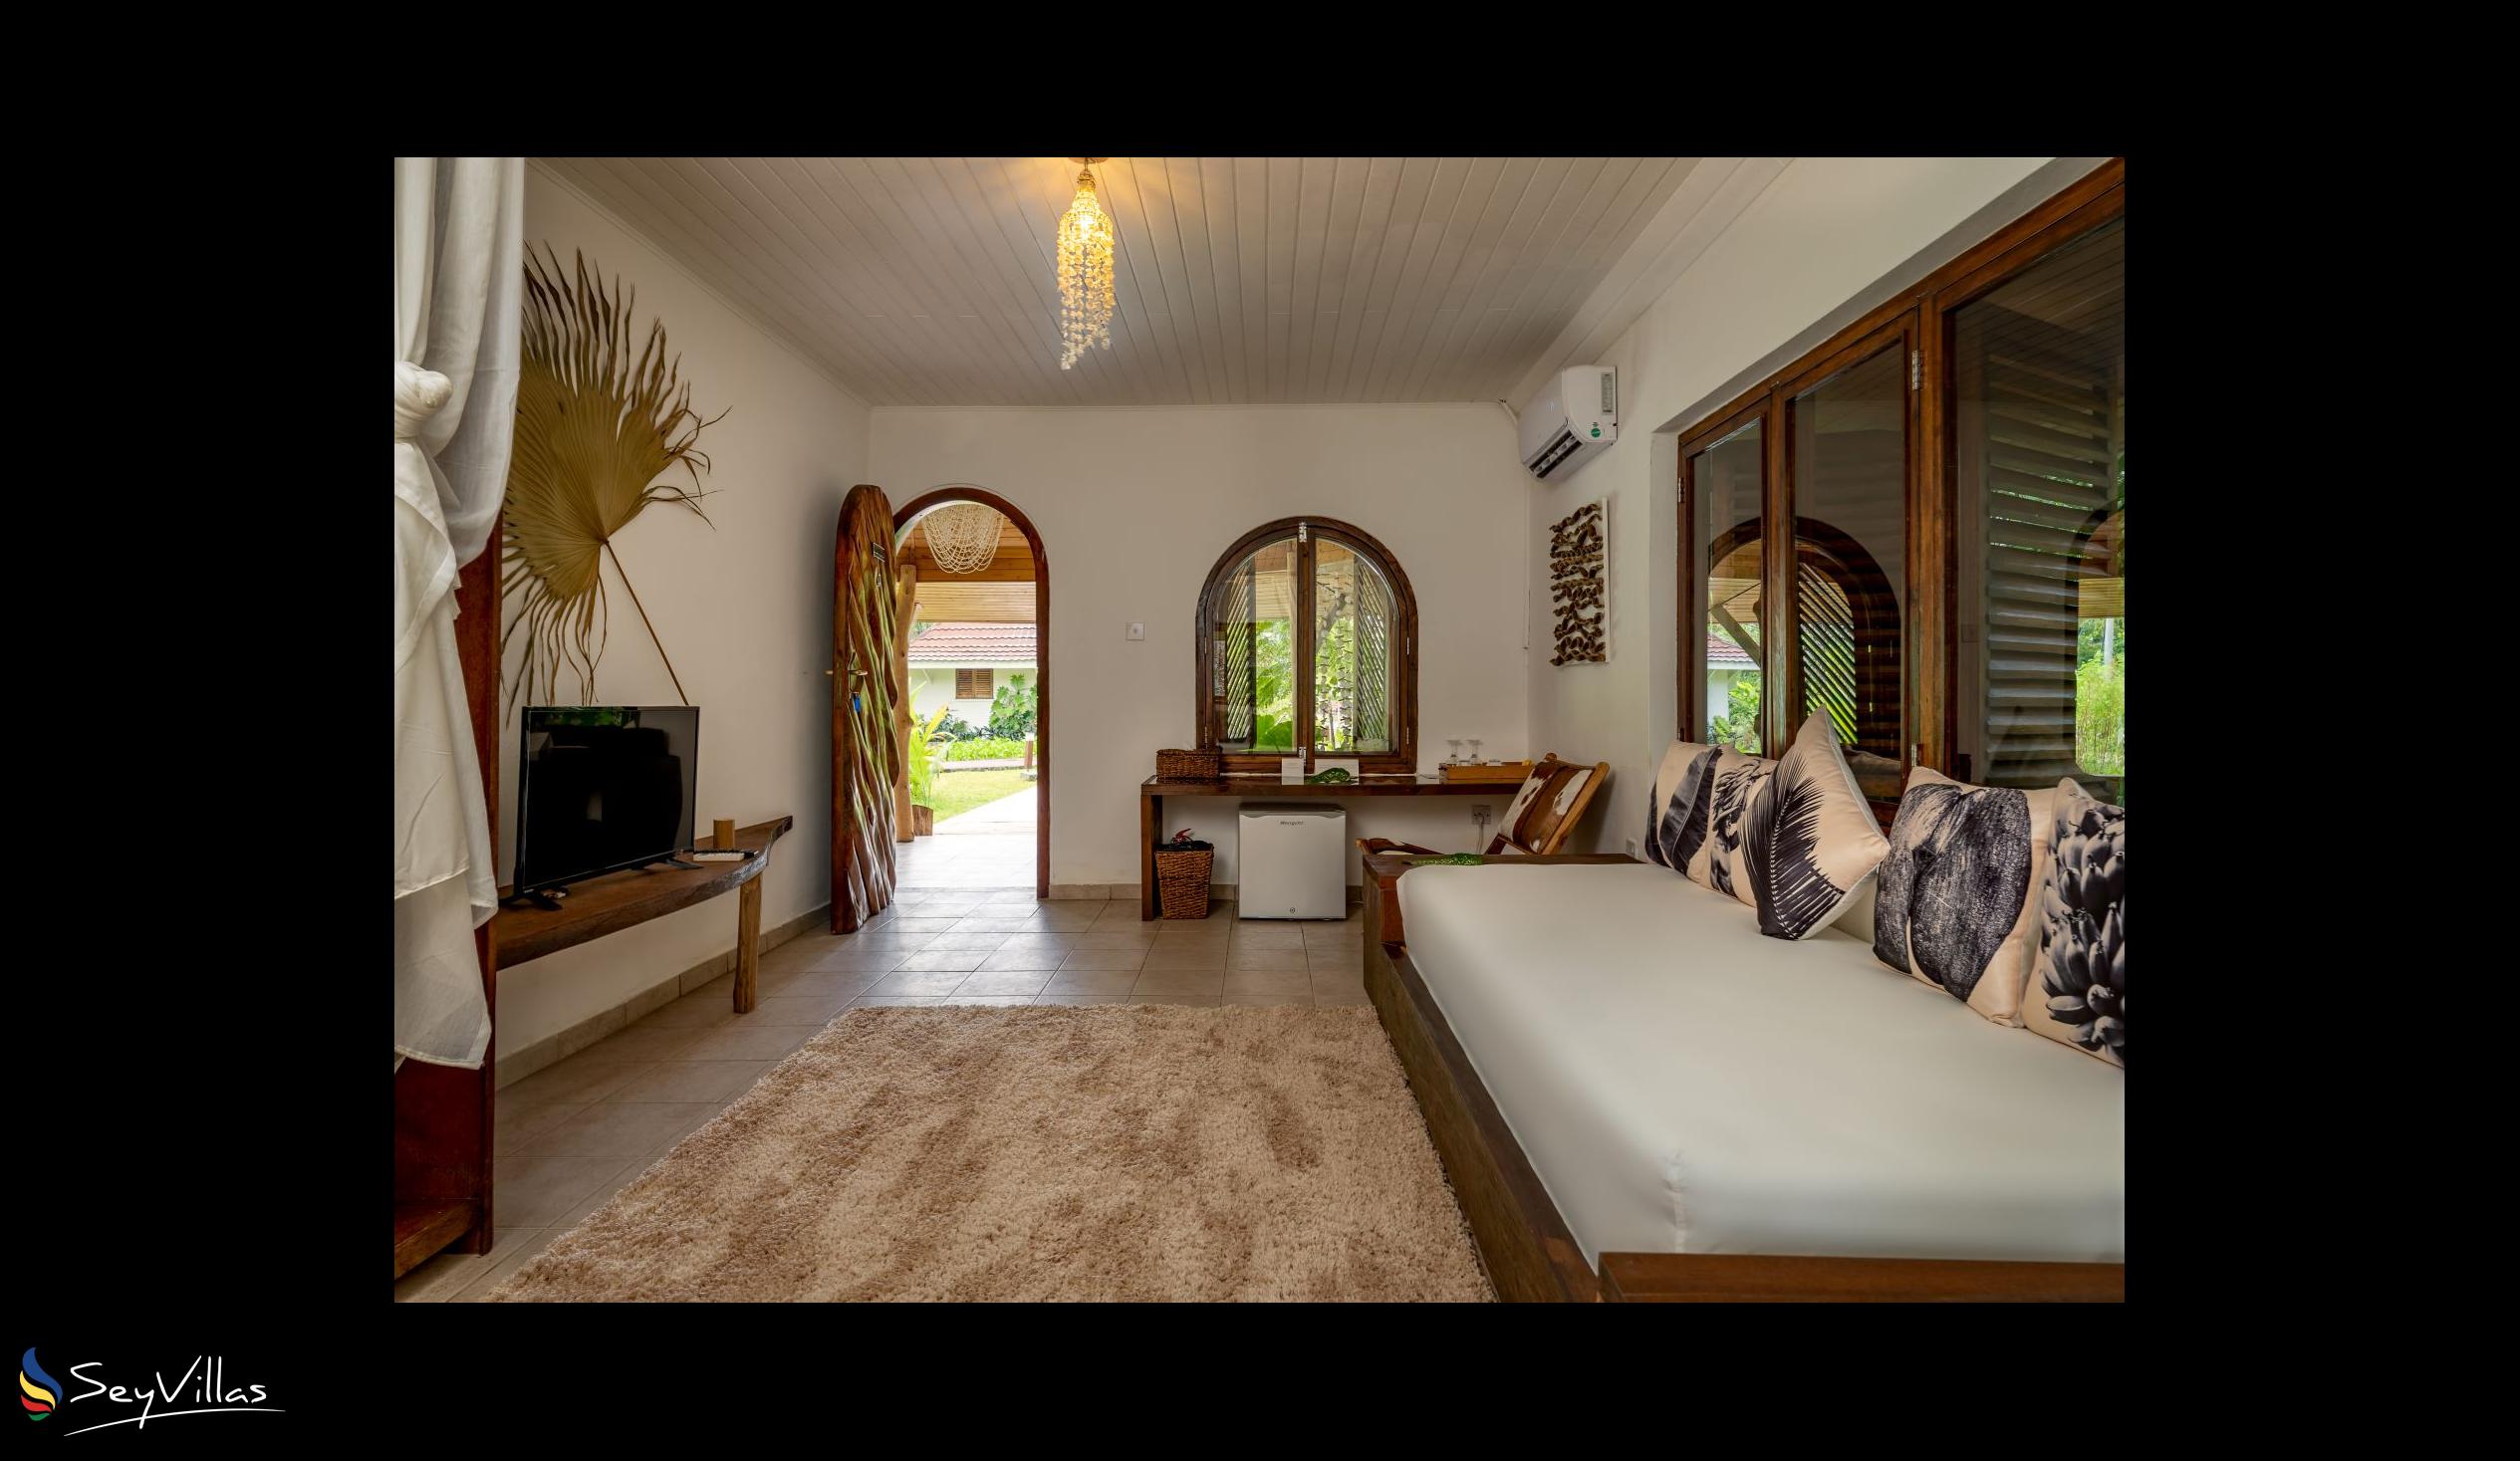 Photo 44: Bliss Hotel Praslin - Eden Garden - Family Suite - Praslin (Seychelles)